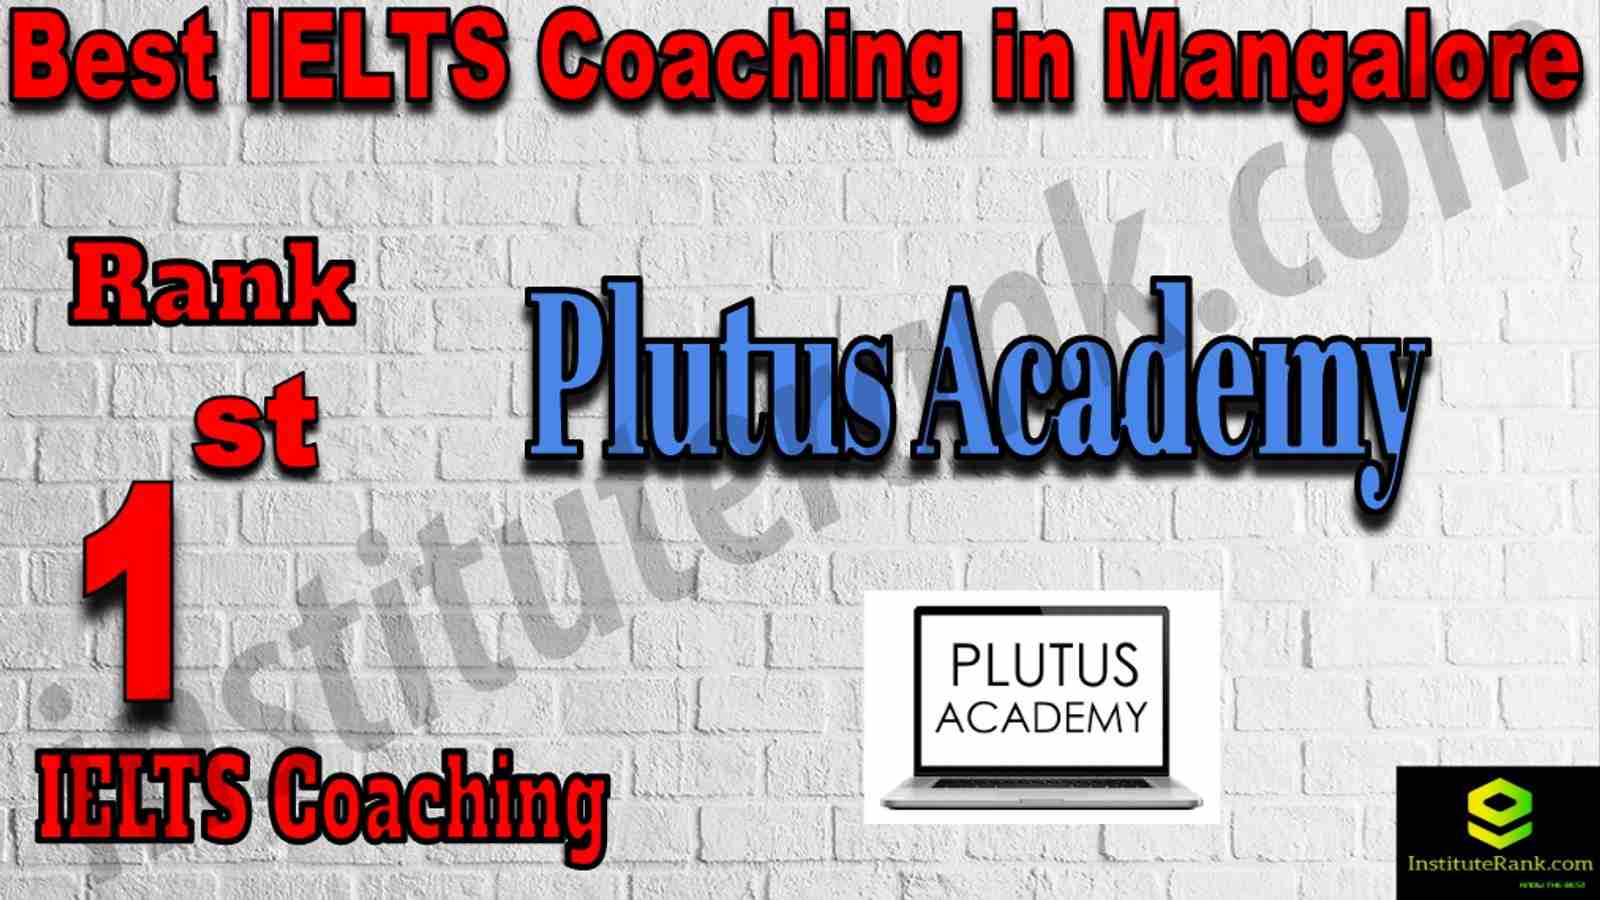 1st Best IELTS Coaching in Mangalore